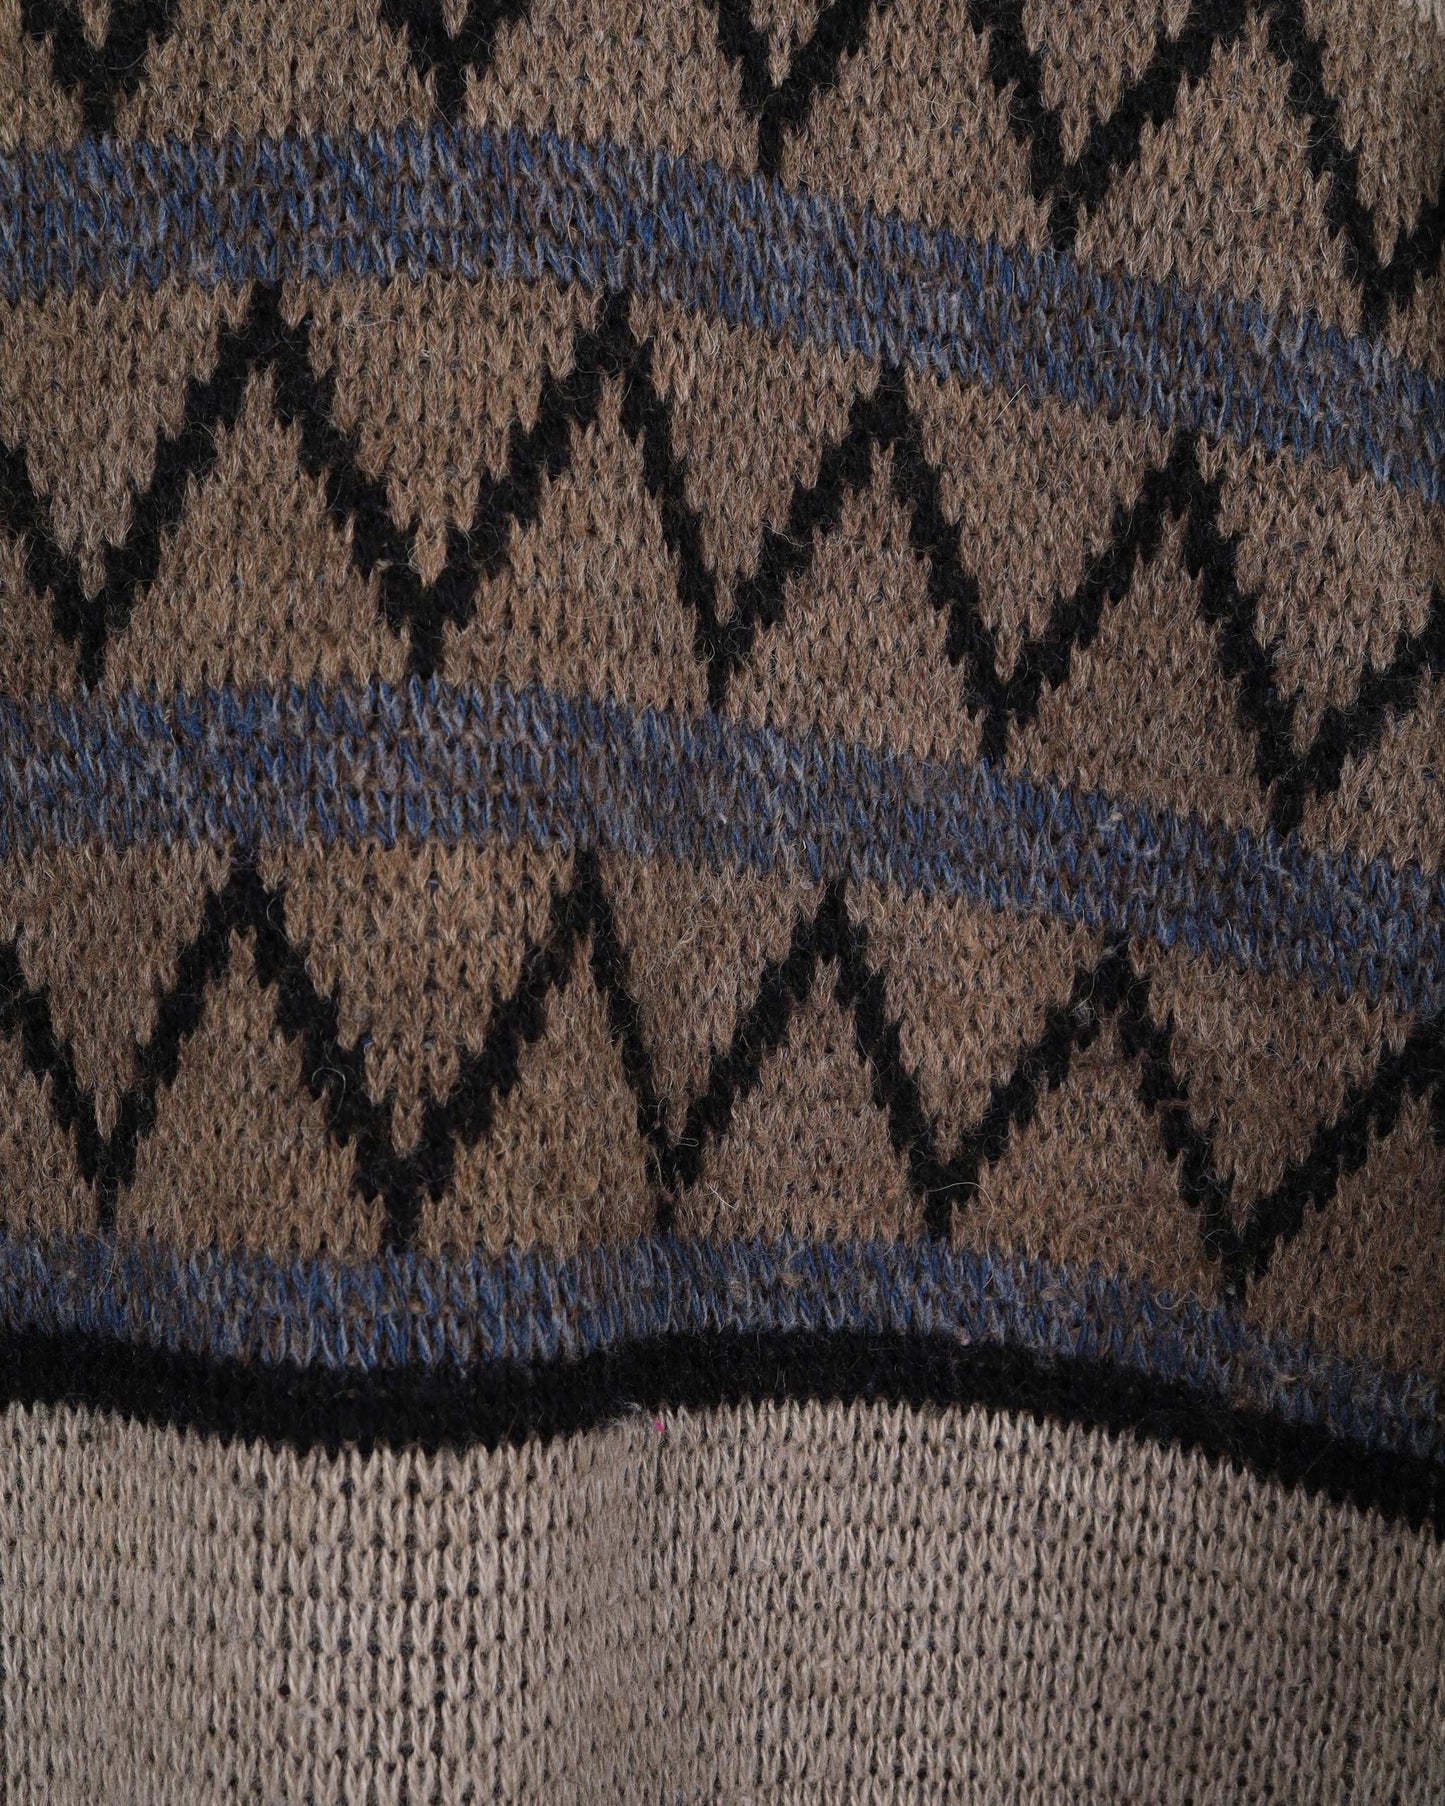 Maglione lavorato a maglia della collezione vintage Reemarc